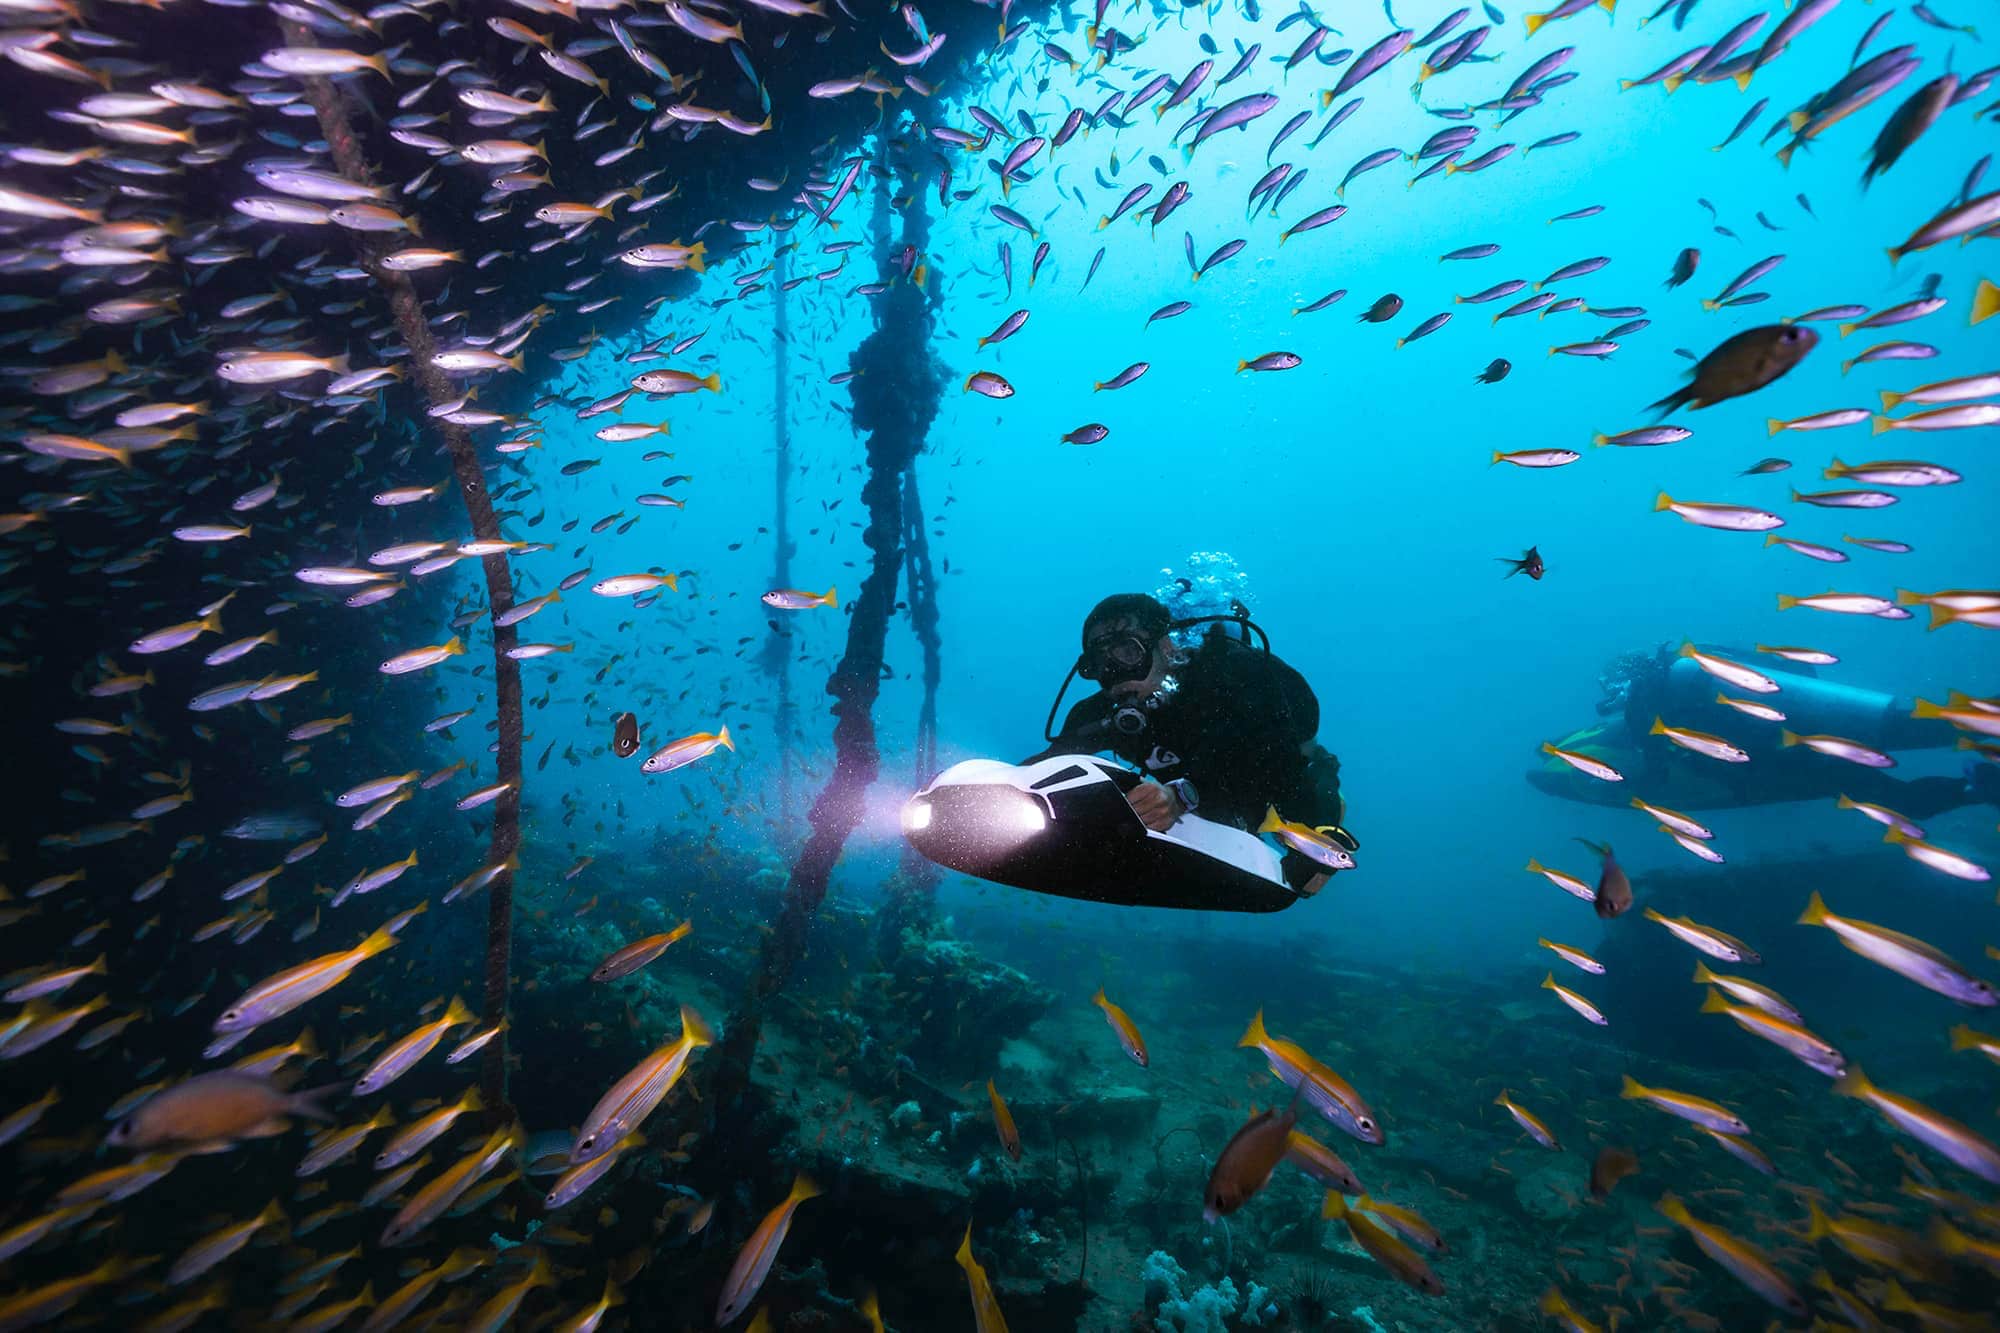 غواص مع الأسماك باستخدام سكوتر البحر iAQUA لاستكشاف المحيط.